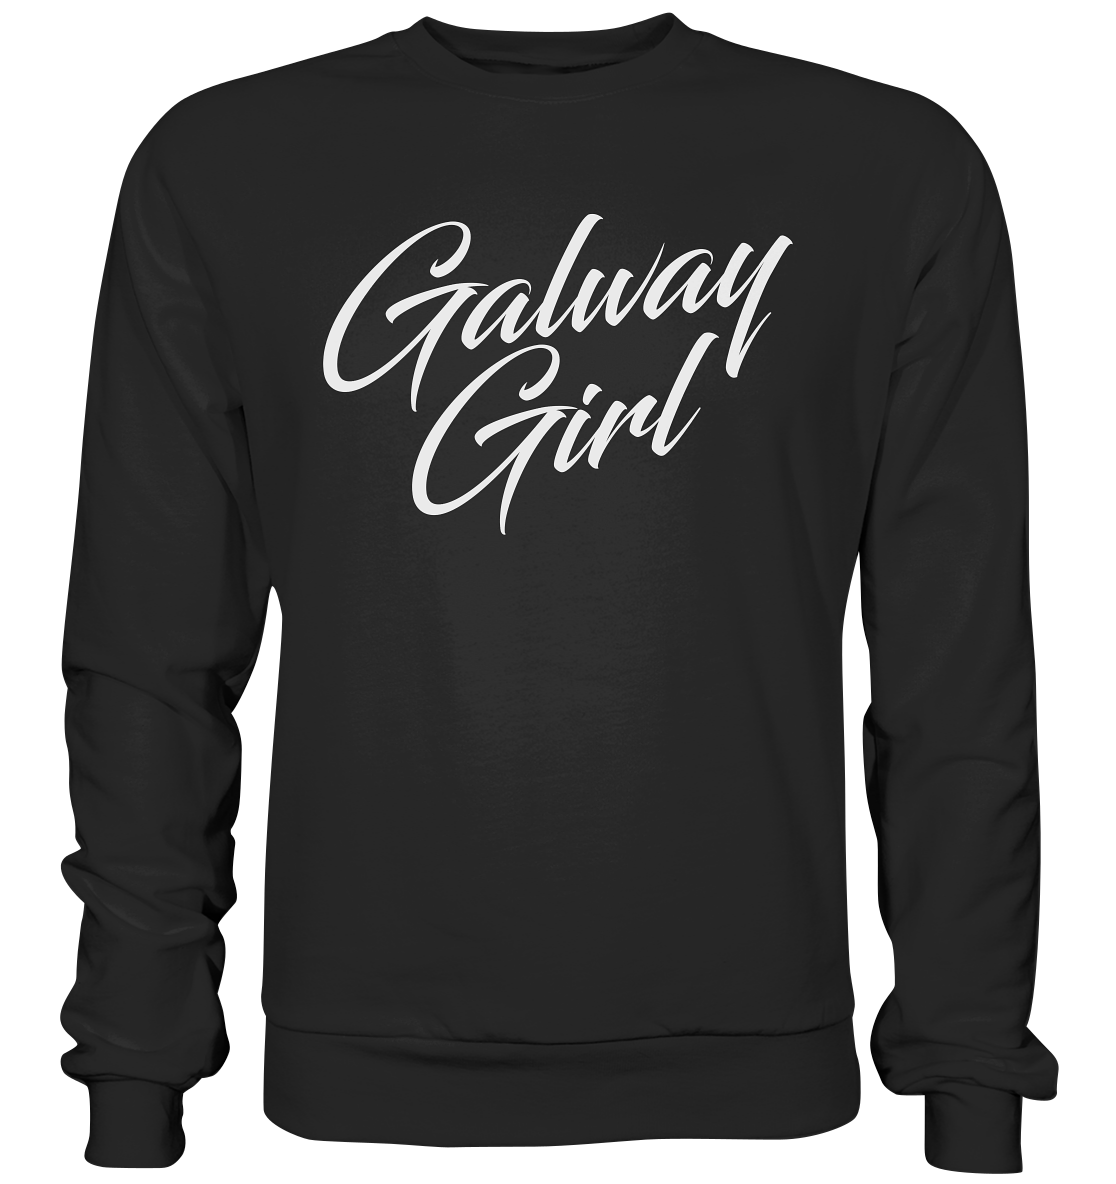 Galway Girl "Script" - Premium Sweatshirt